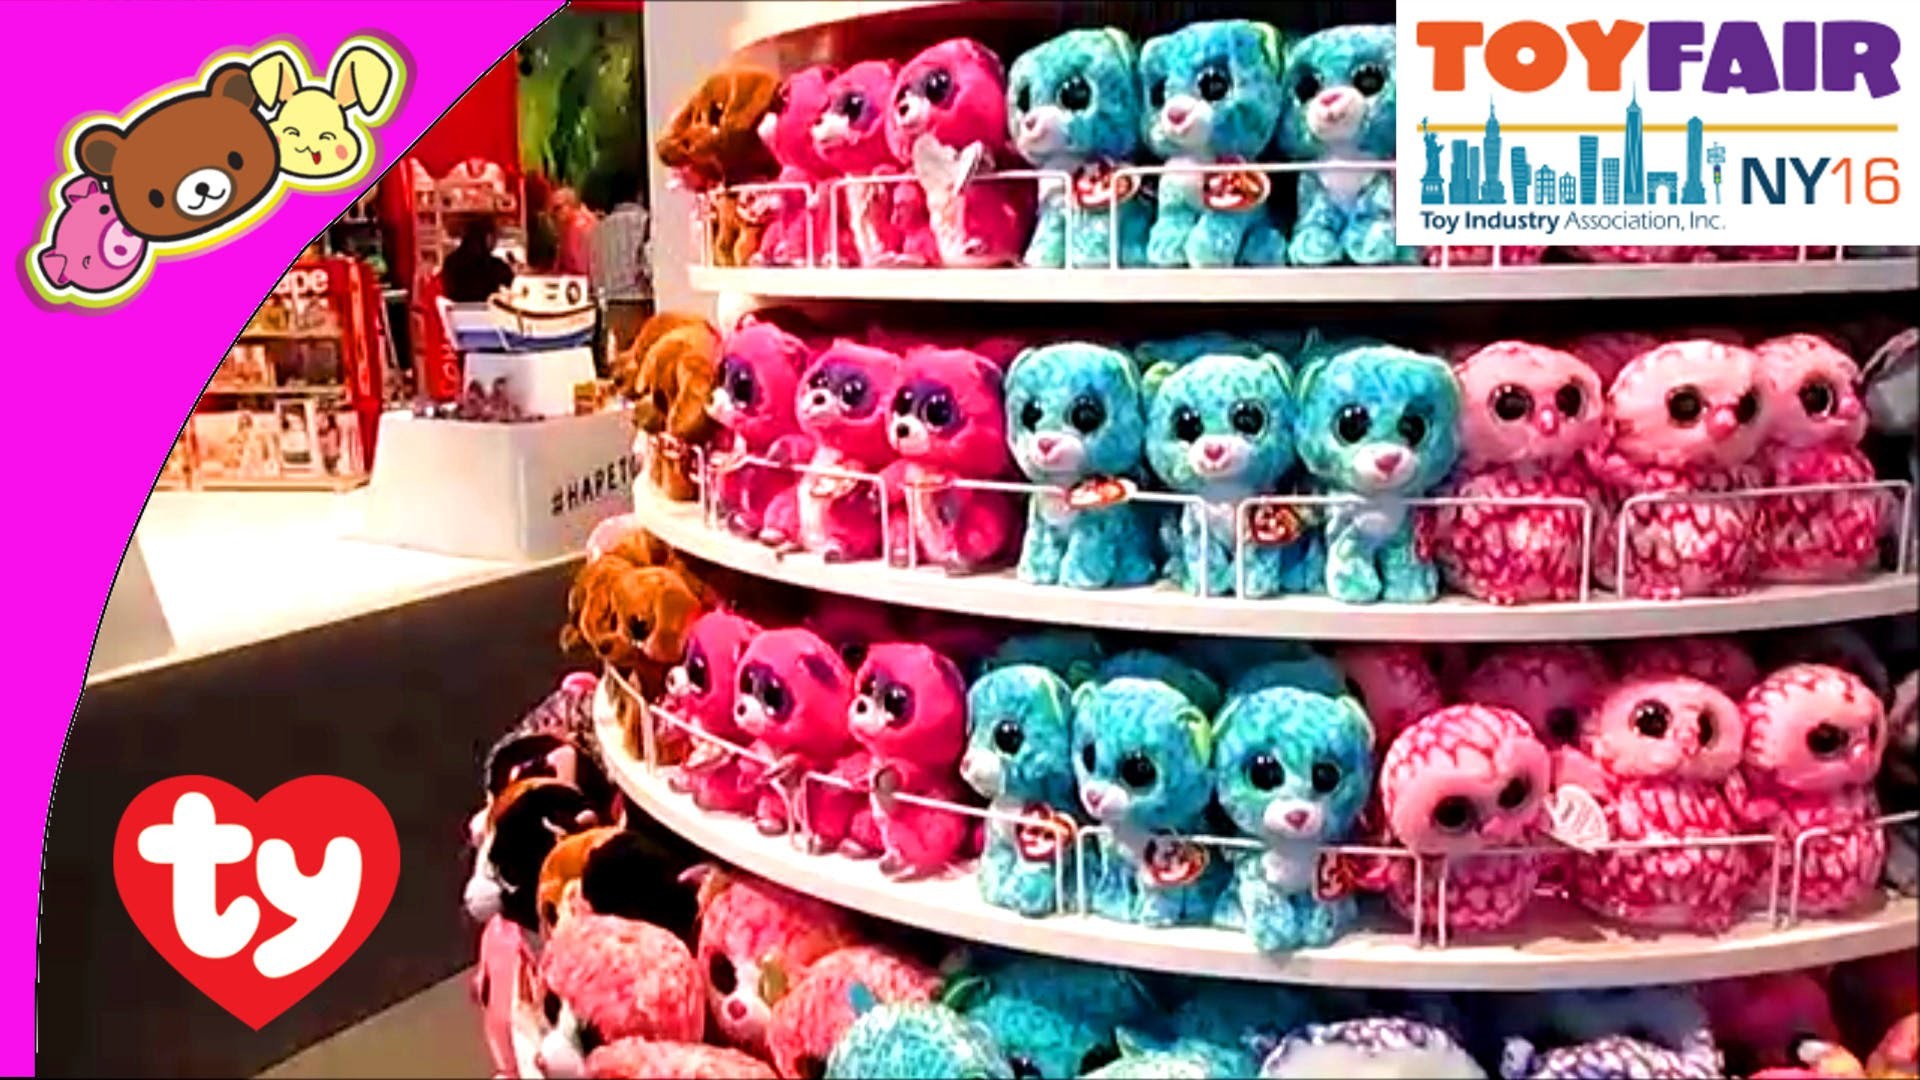 1920x1080 TY Beanie Babies, Beanie Boos, Peek-a-Boos, and More Cute Plush Toys at New  York Toy Fair 2016!